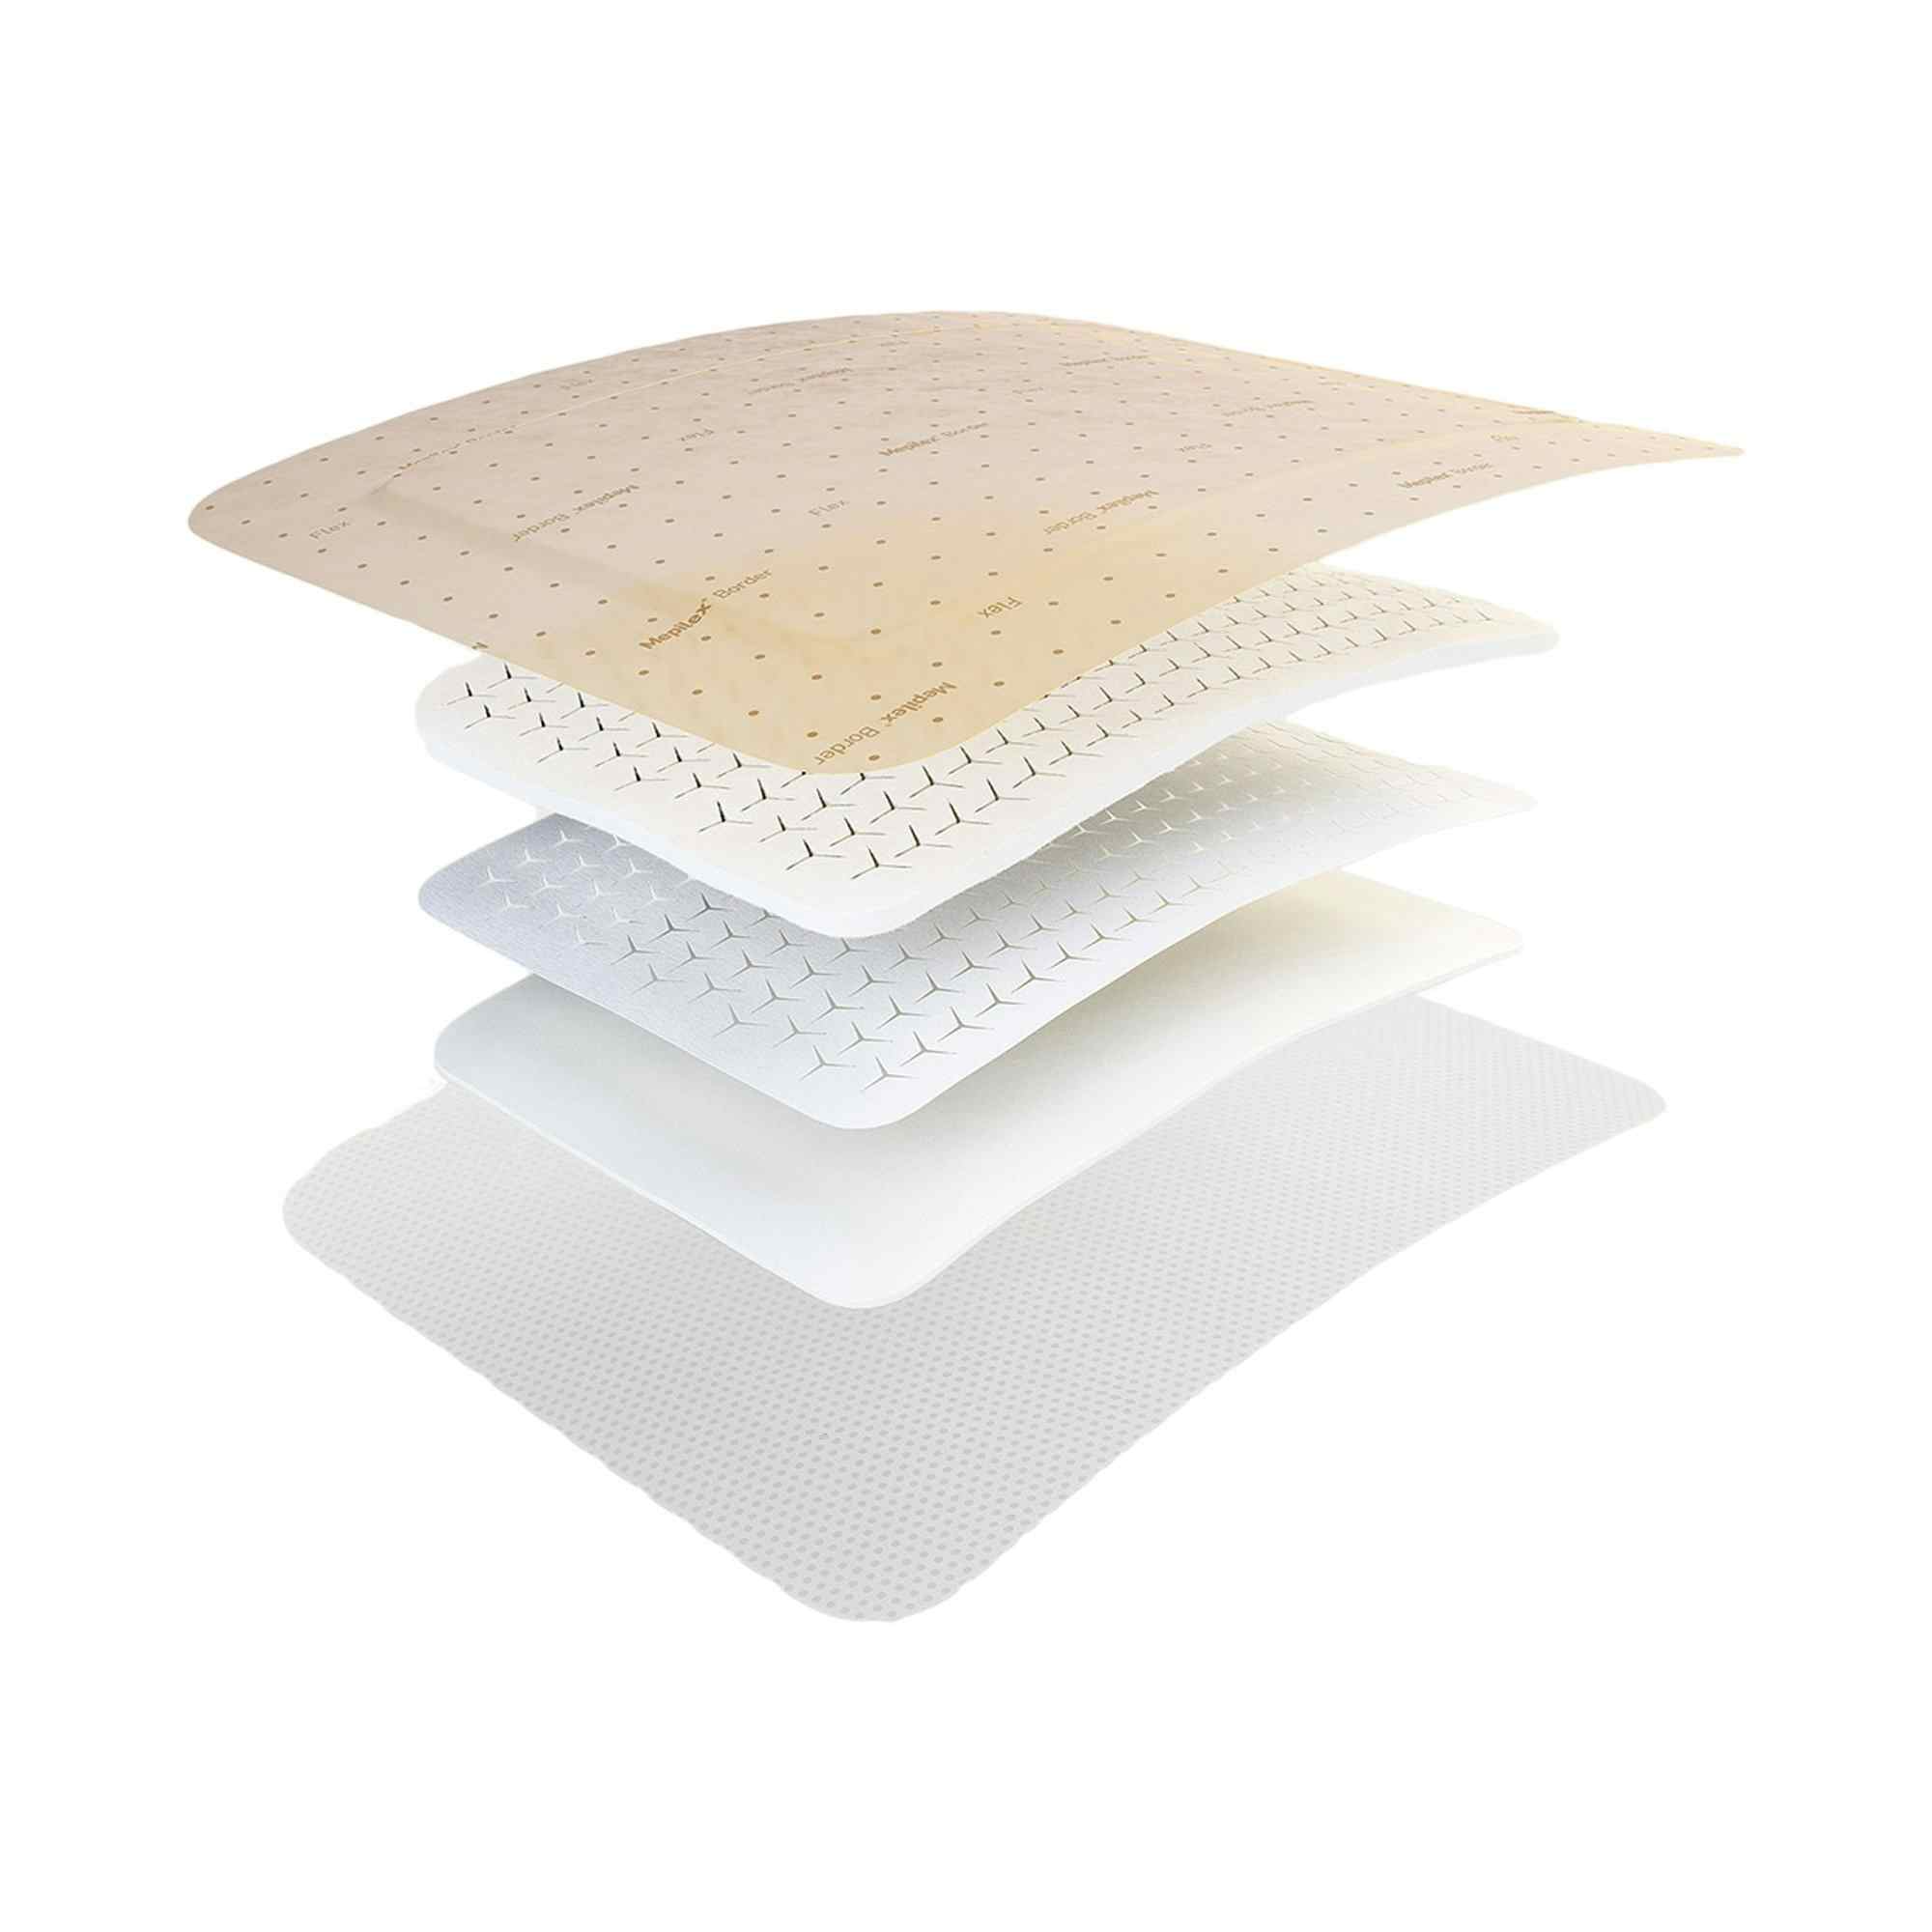 Molnlycke Mepilex Border Flex Self-Adherent Soft Silicone Foam Dressing, 6 X 6"